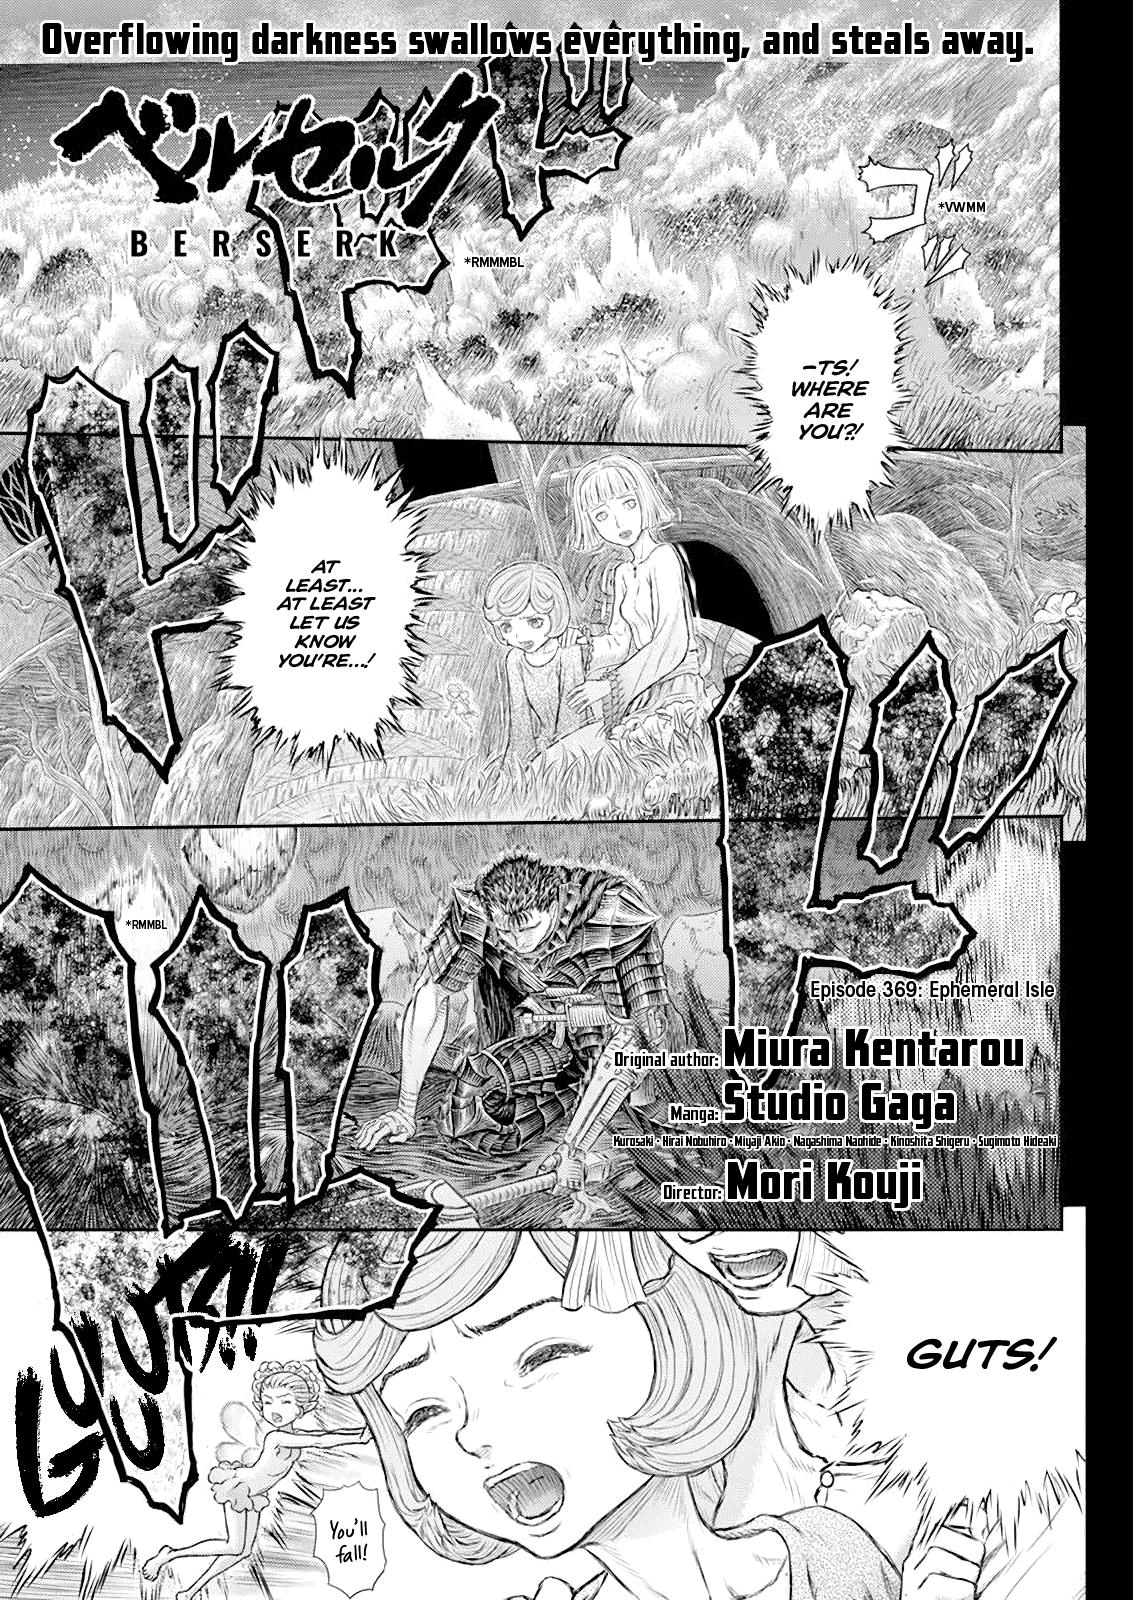 Berserk Manga Chapter 369 image 01